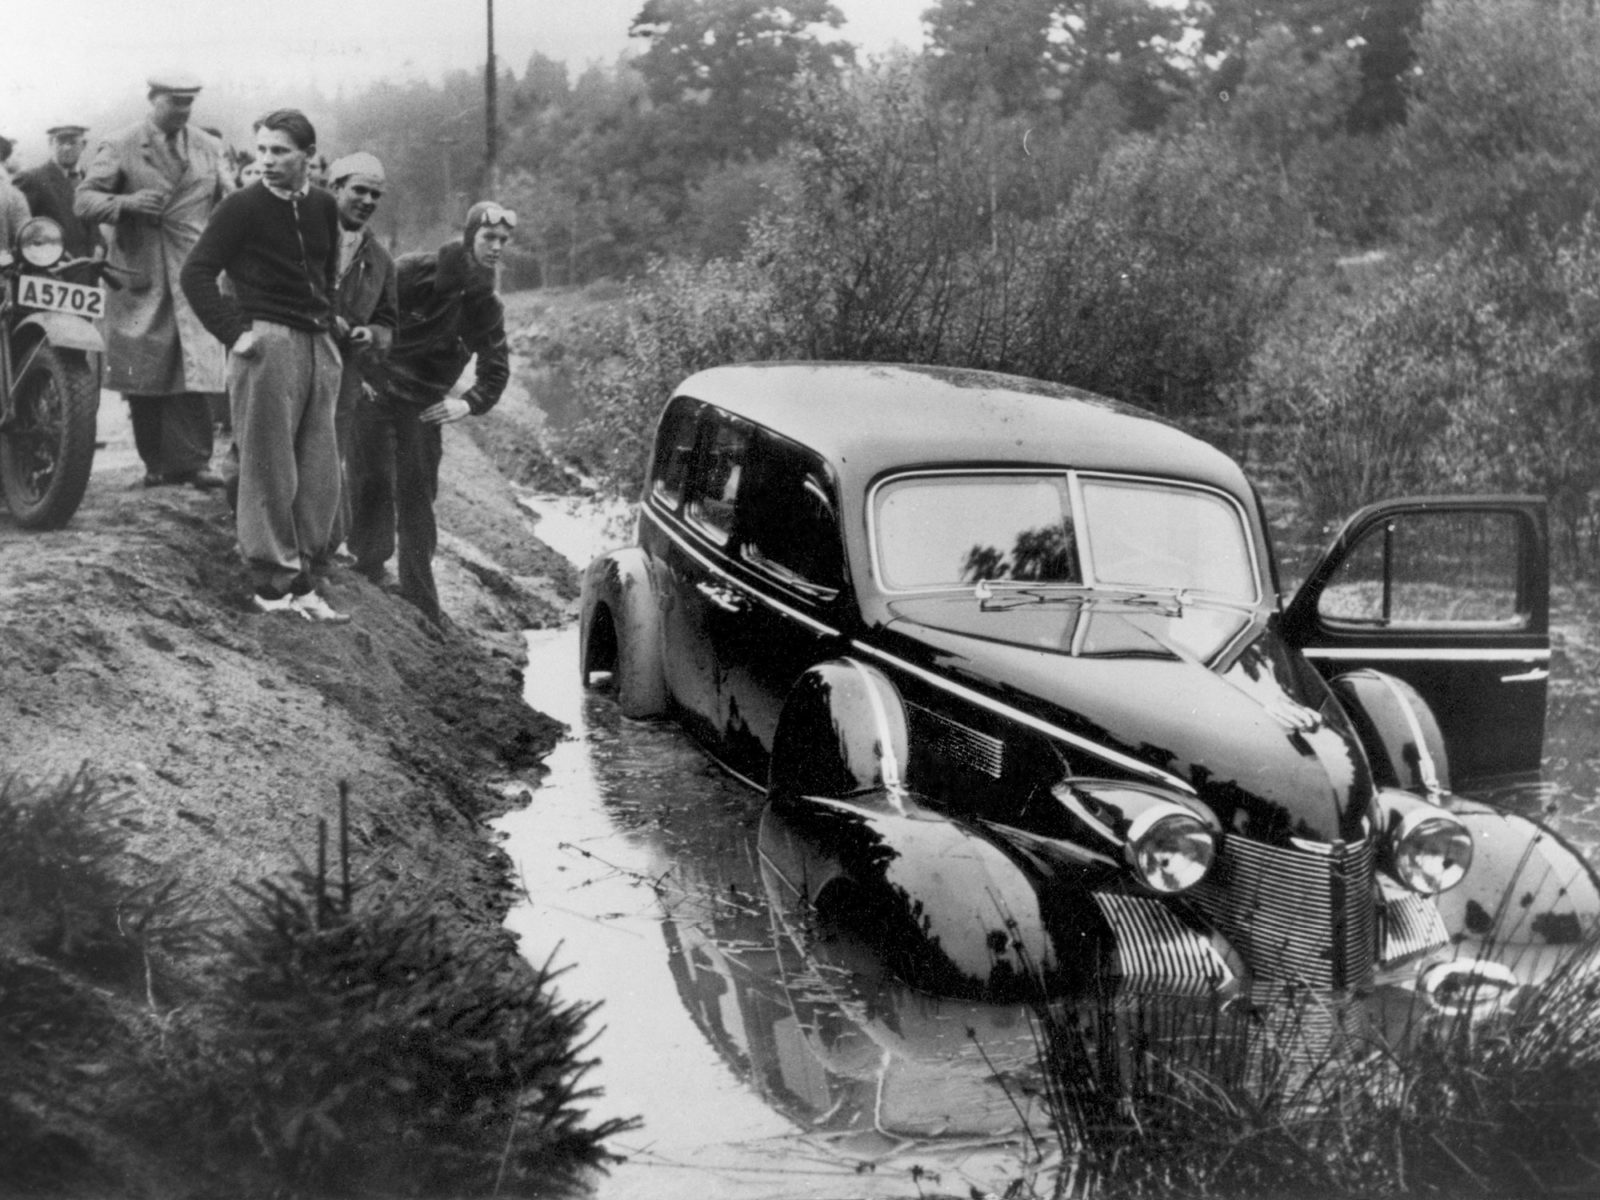 En 1940-tals-Cadillac står i vattenfyllt vägdike. Manliga åskådare i 1940-talskläder har samlats på vägen ovanför.